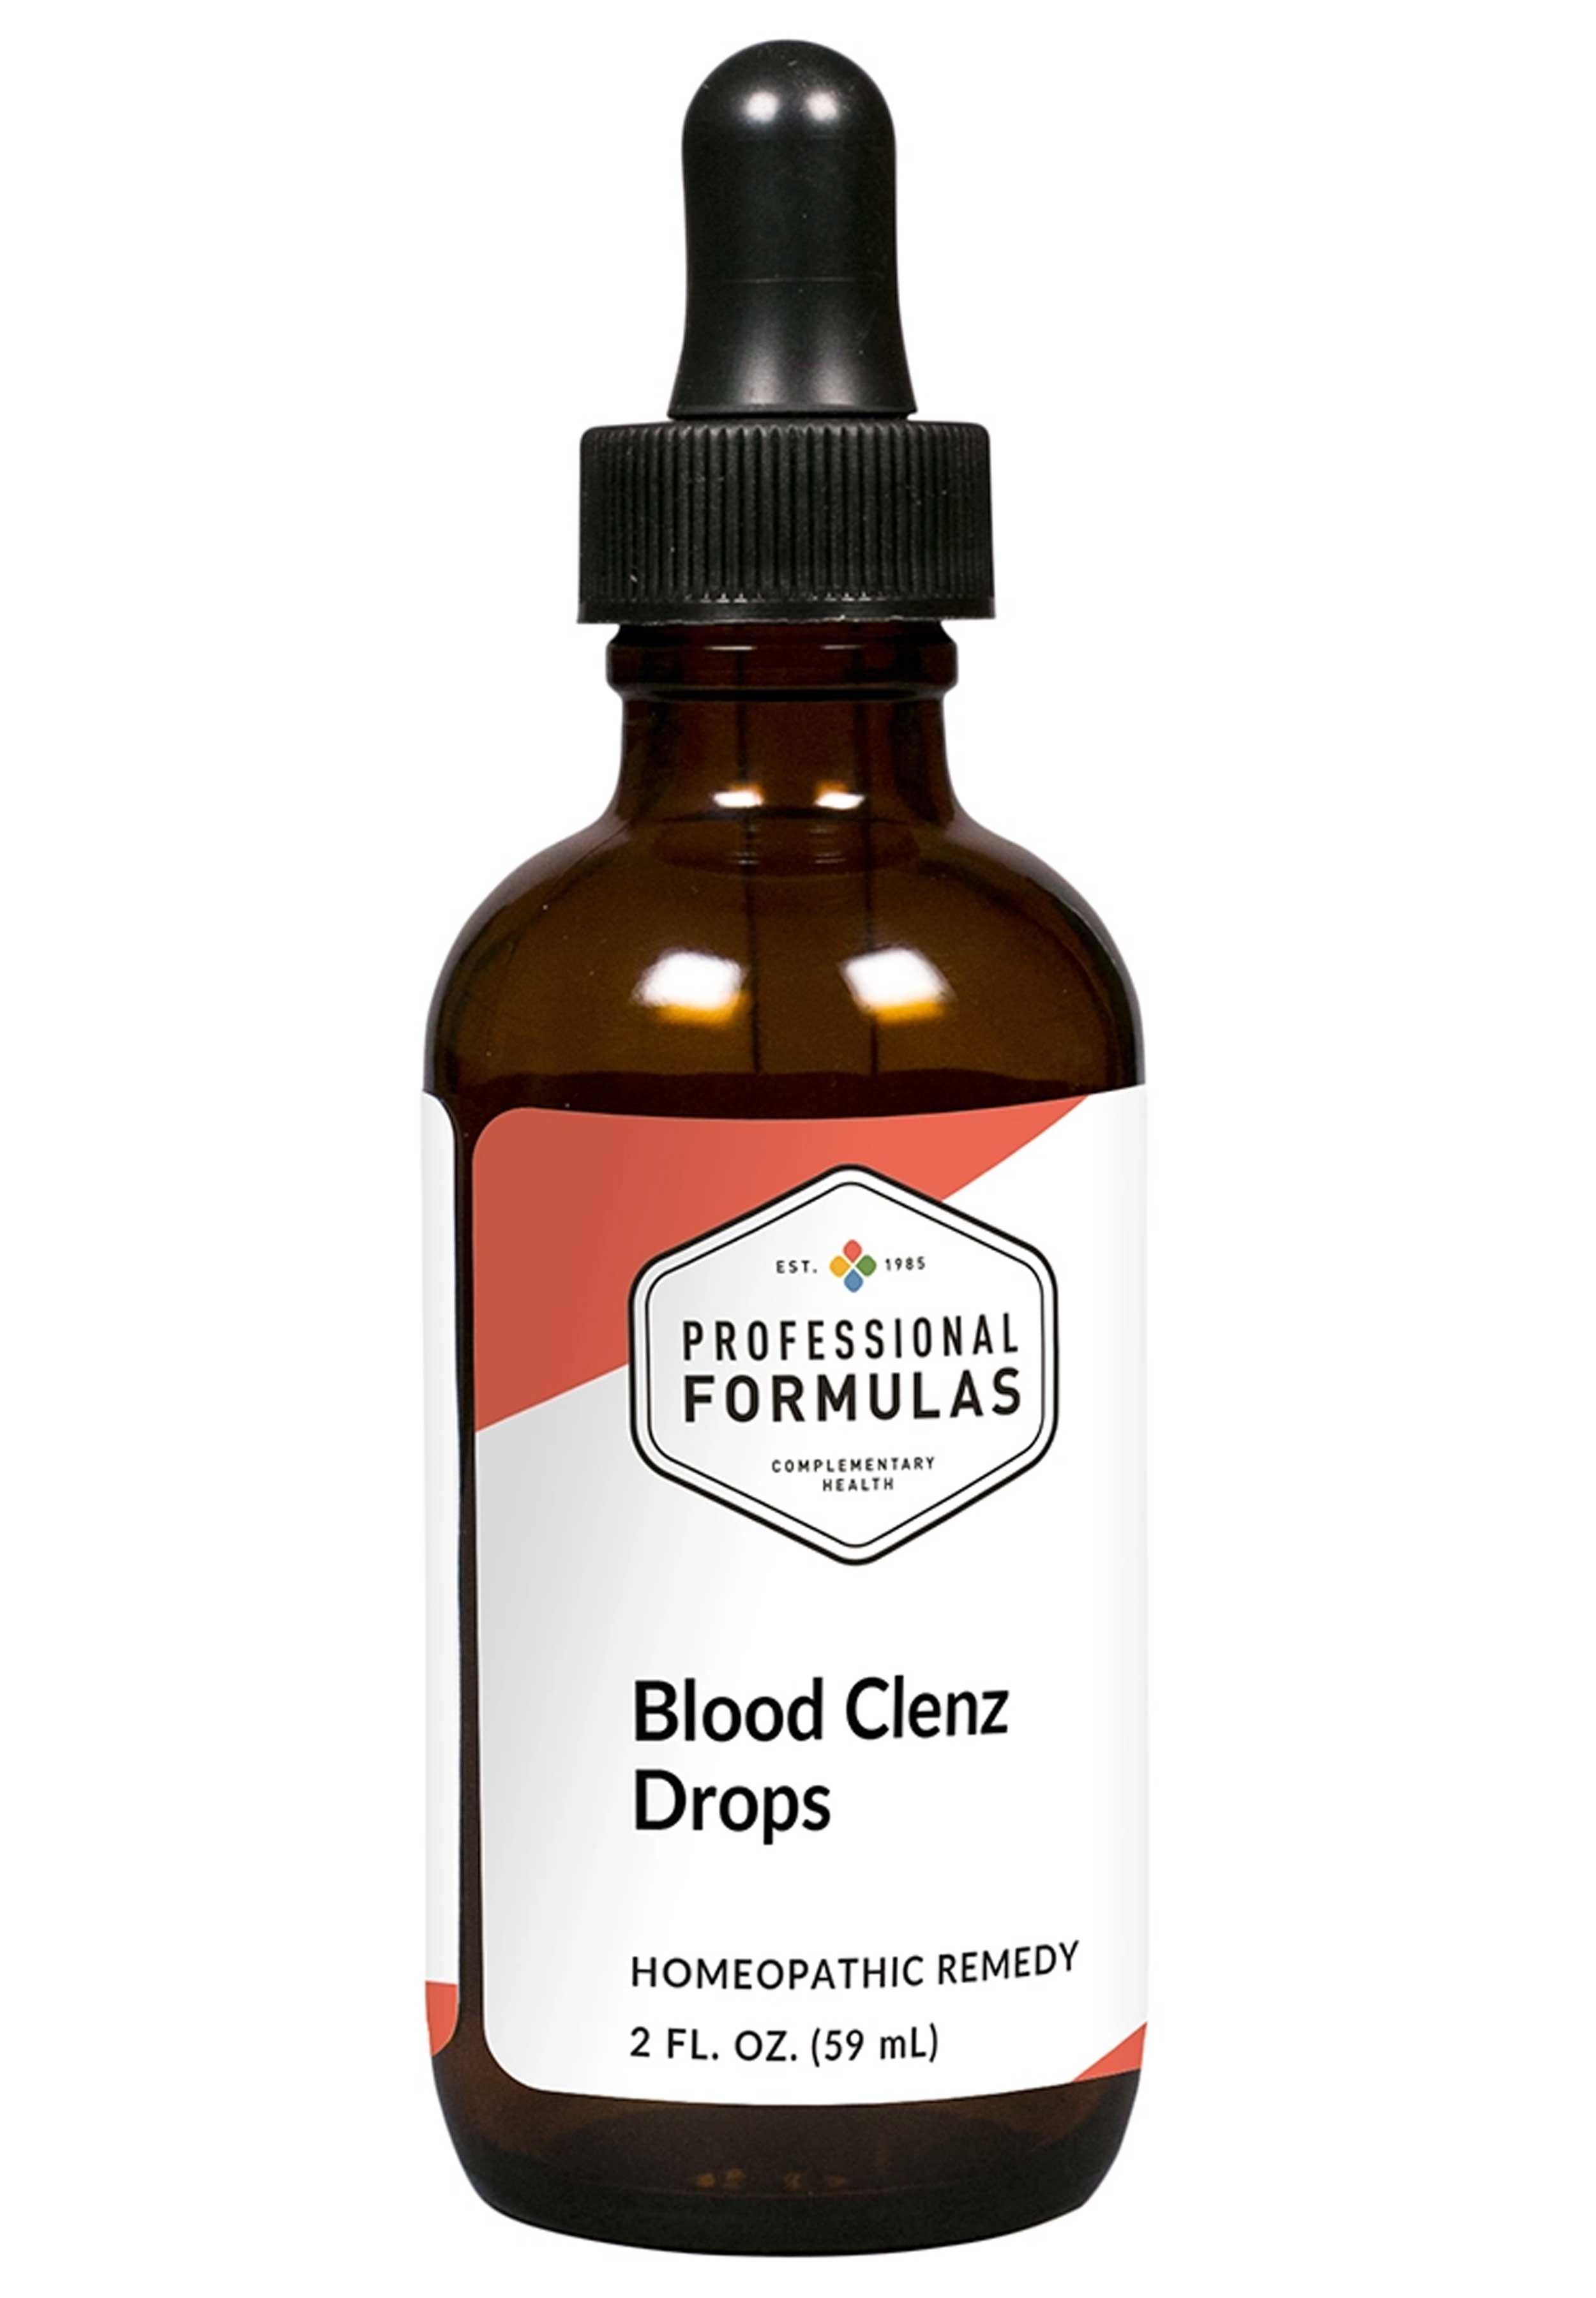 Professional Formulas Blood Clenz Drops